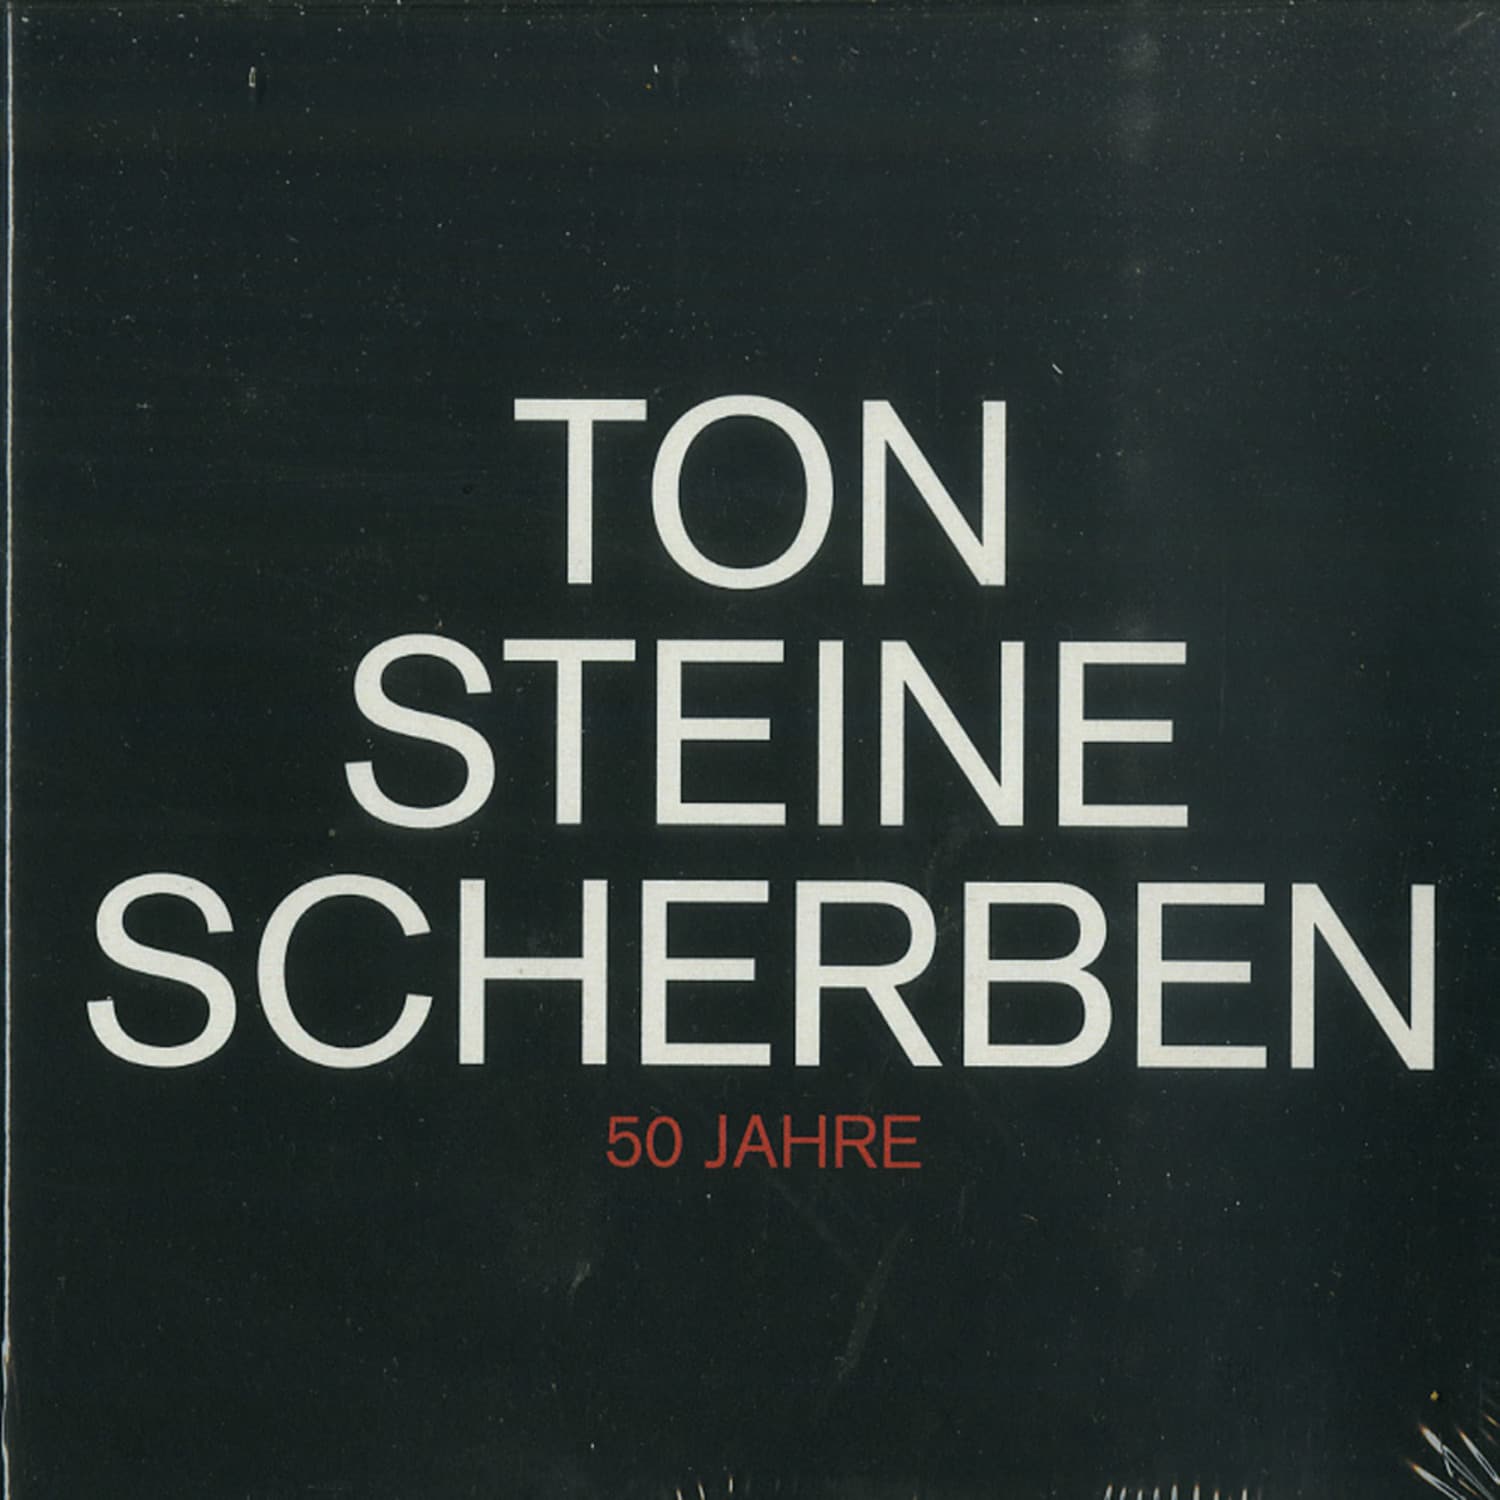 Ton Steine Scherben - 50 JAHRE 